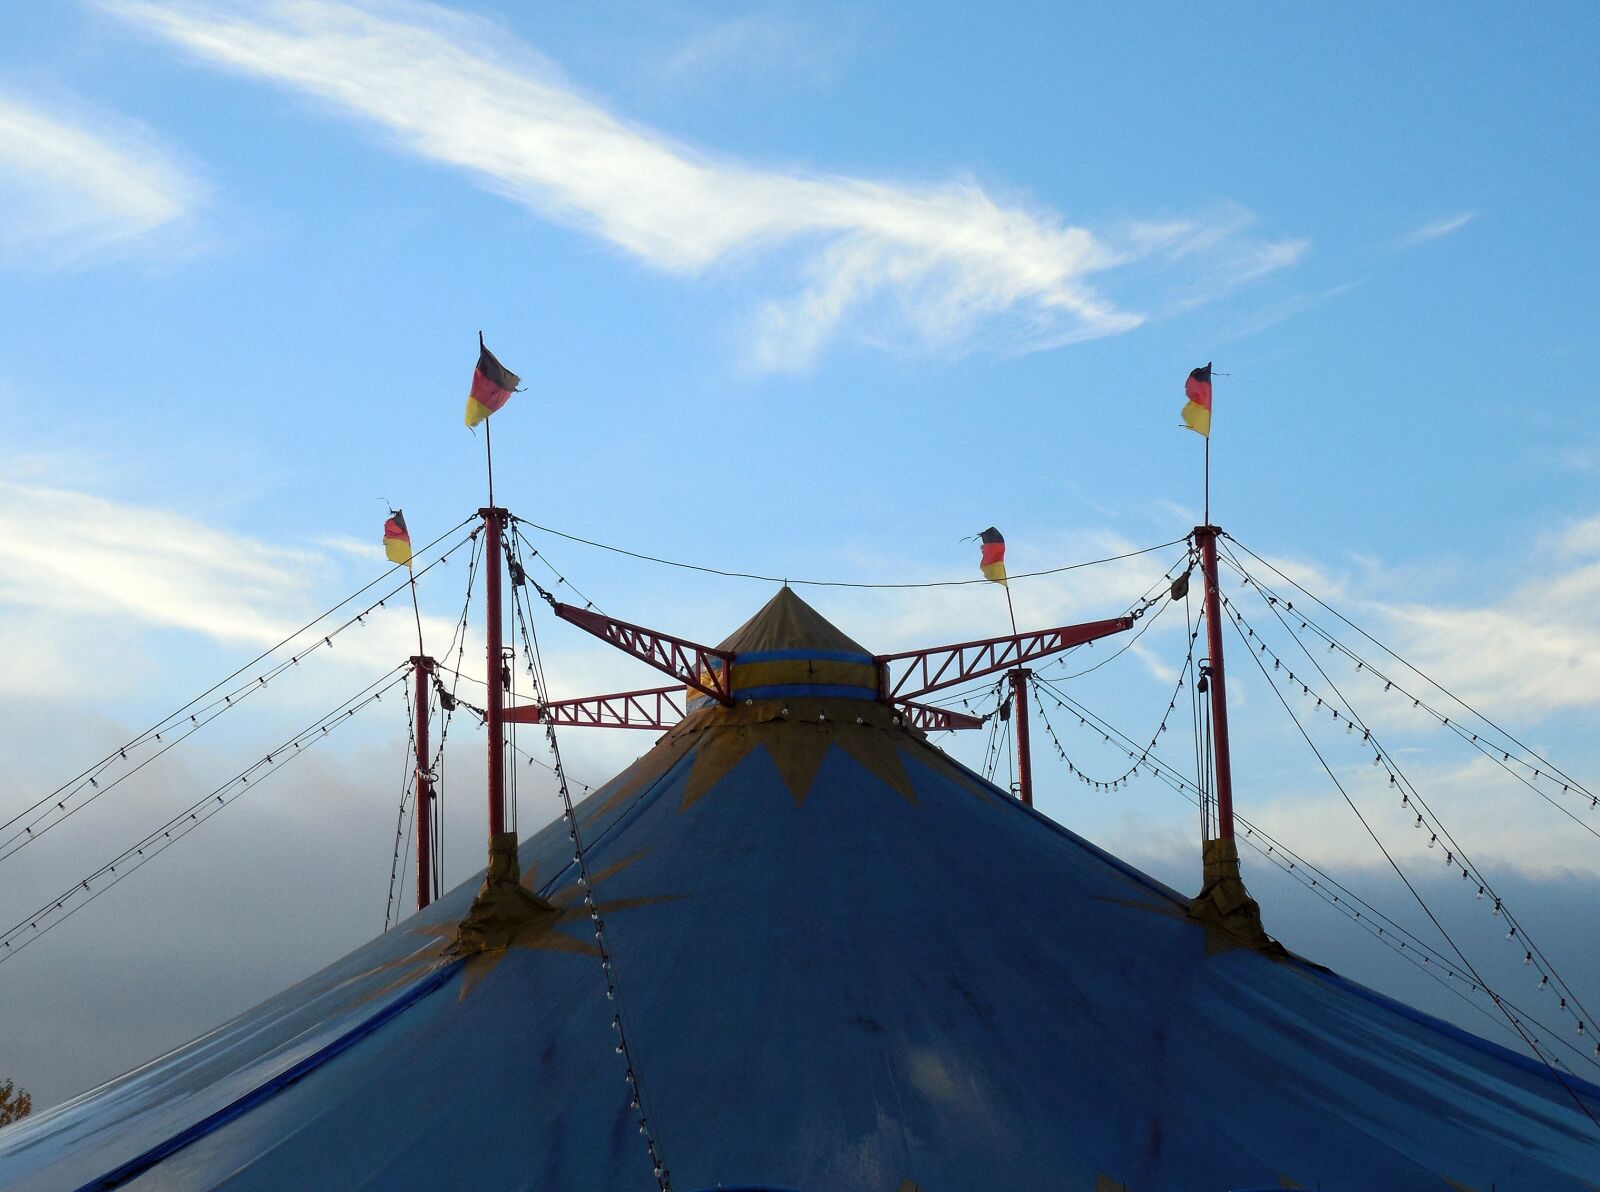 Nikon COOLPIX L620 sample photo. Tent, circus, circus tent photography